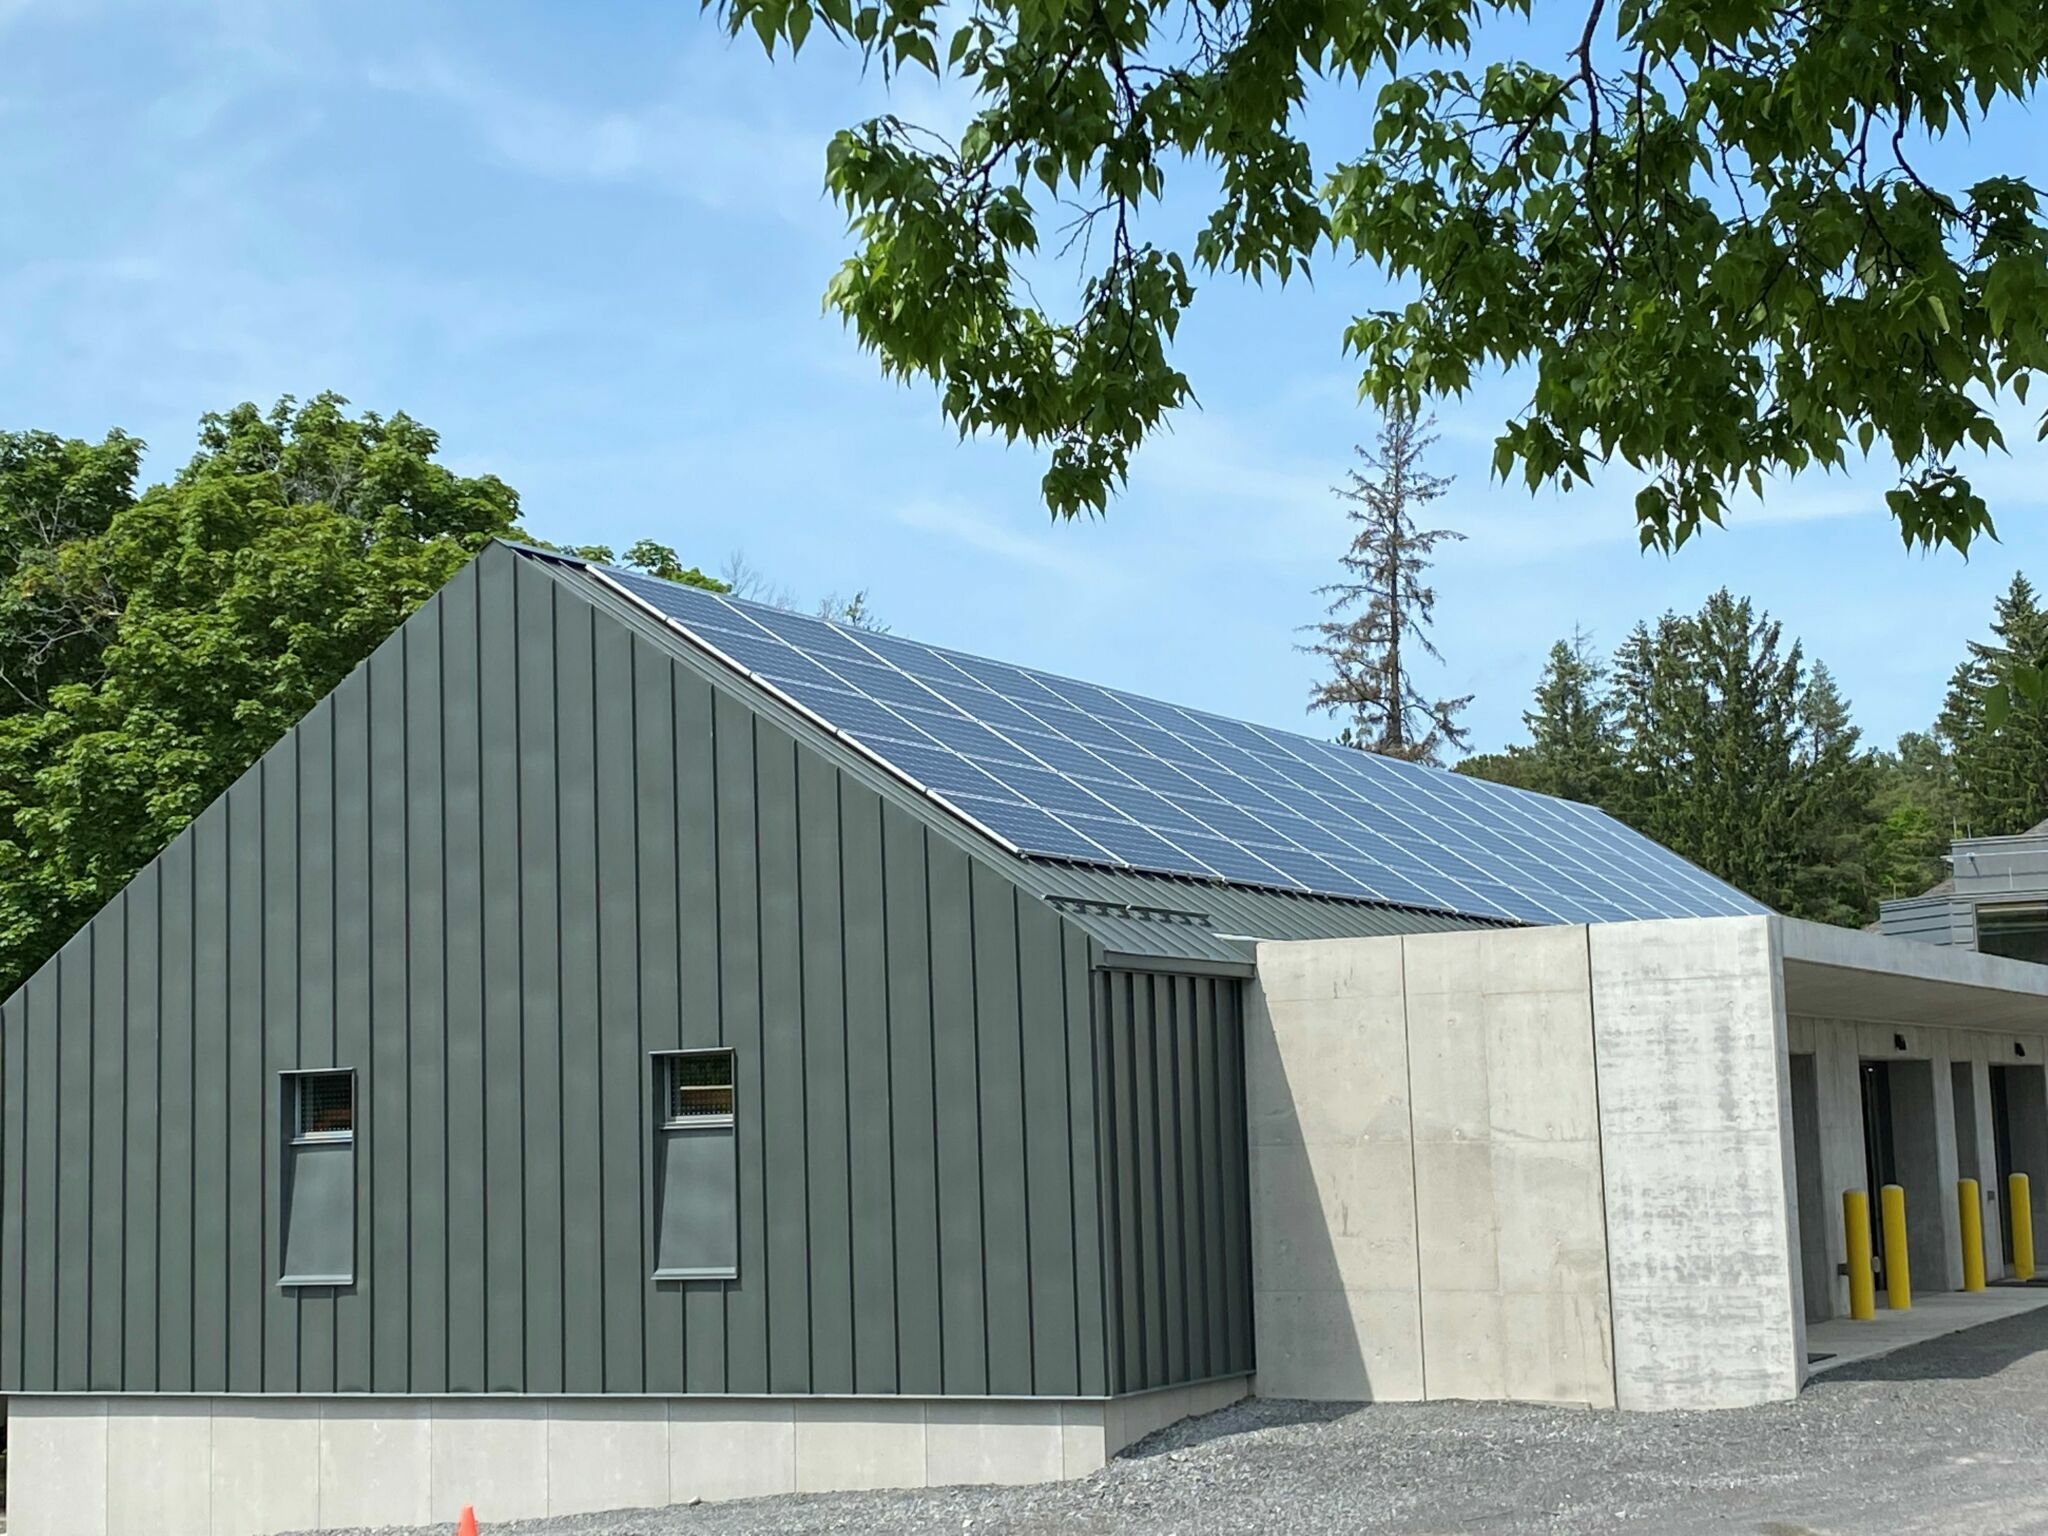 Bâtiment carboneutre doté de panneaux solaires sur le toit.